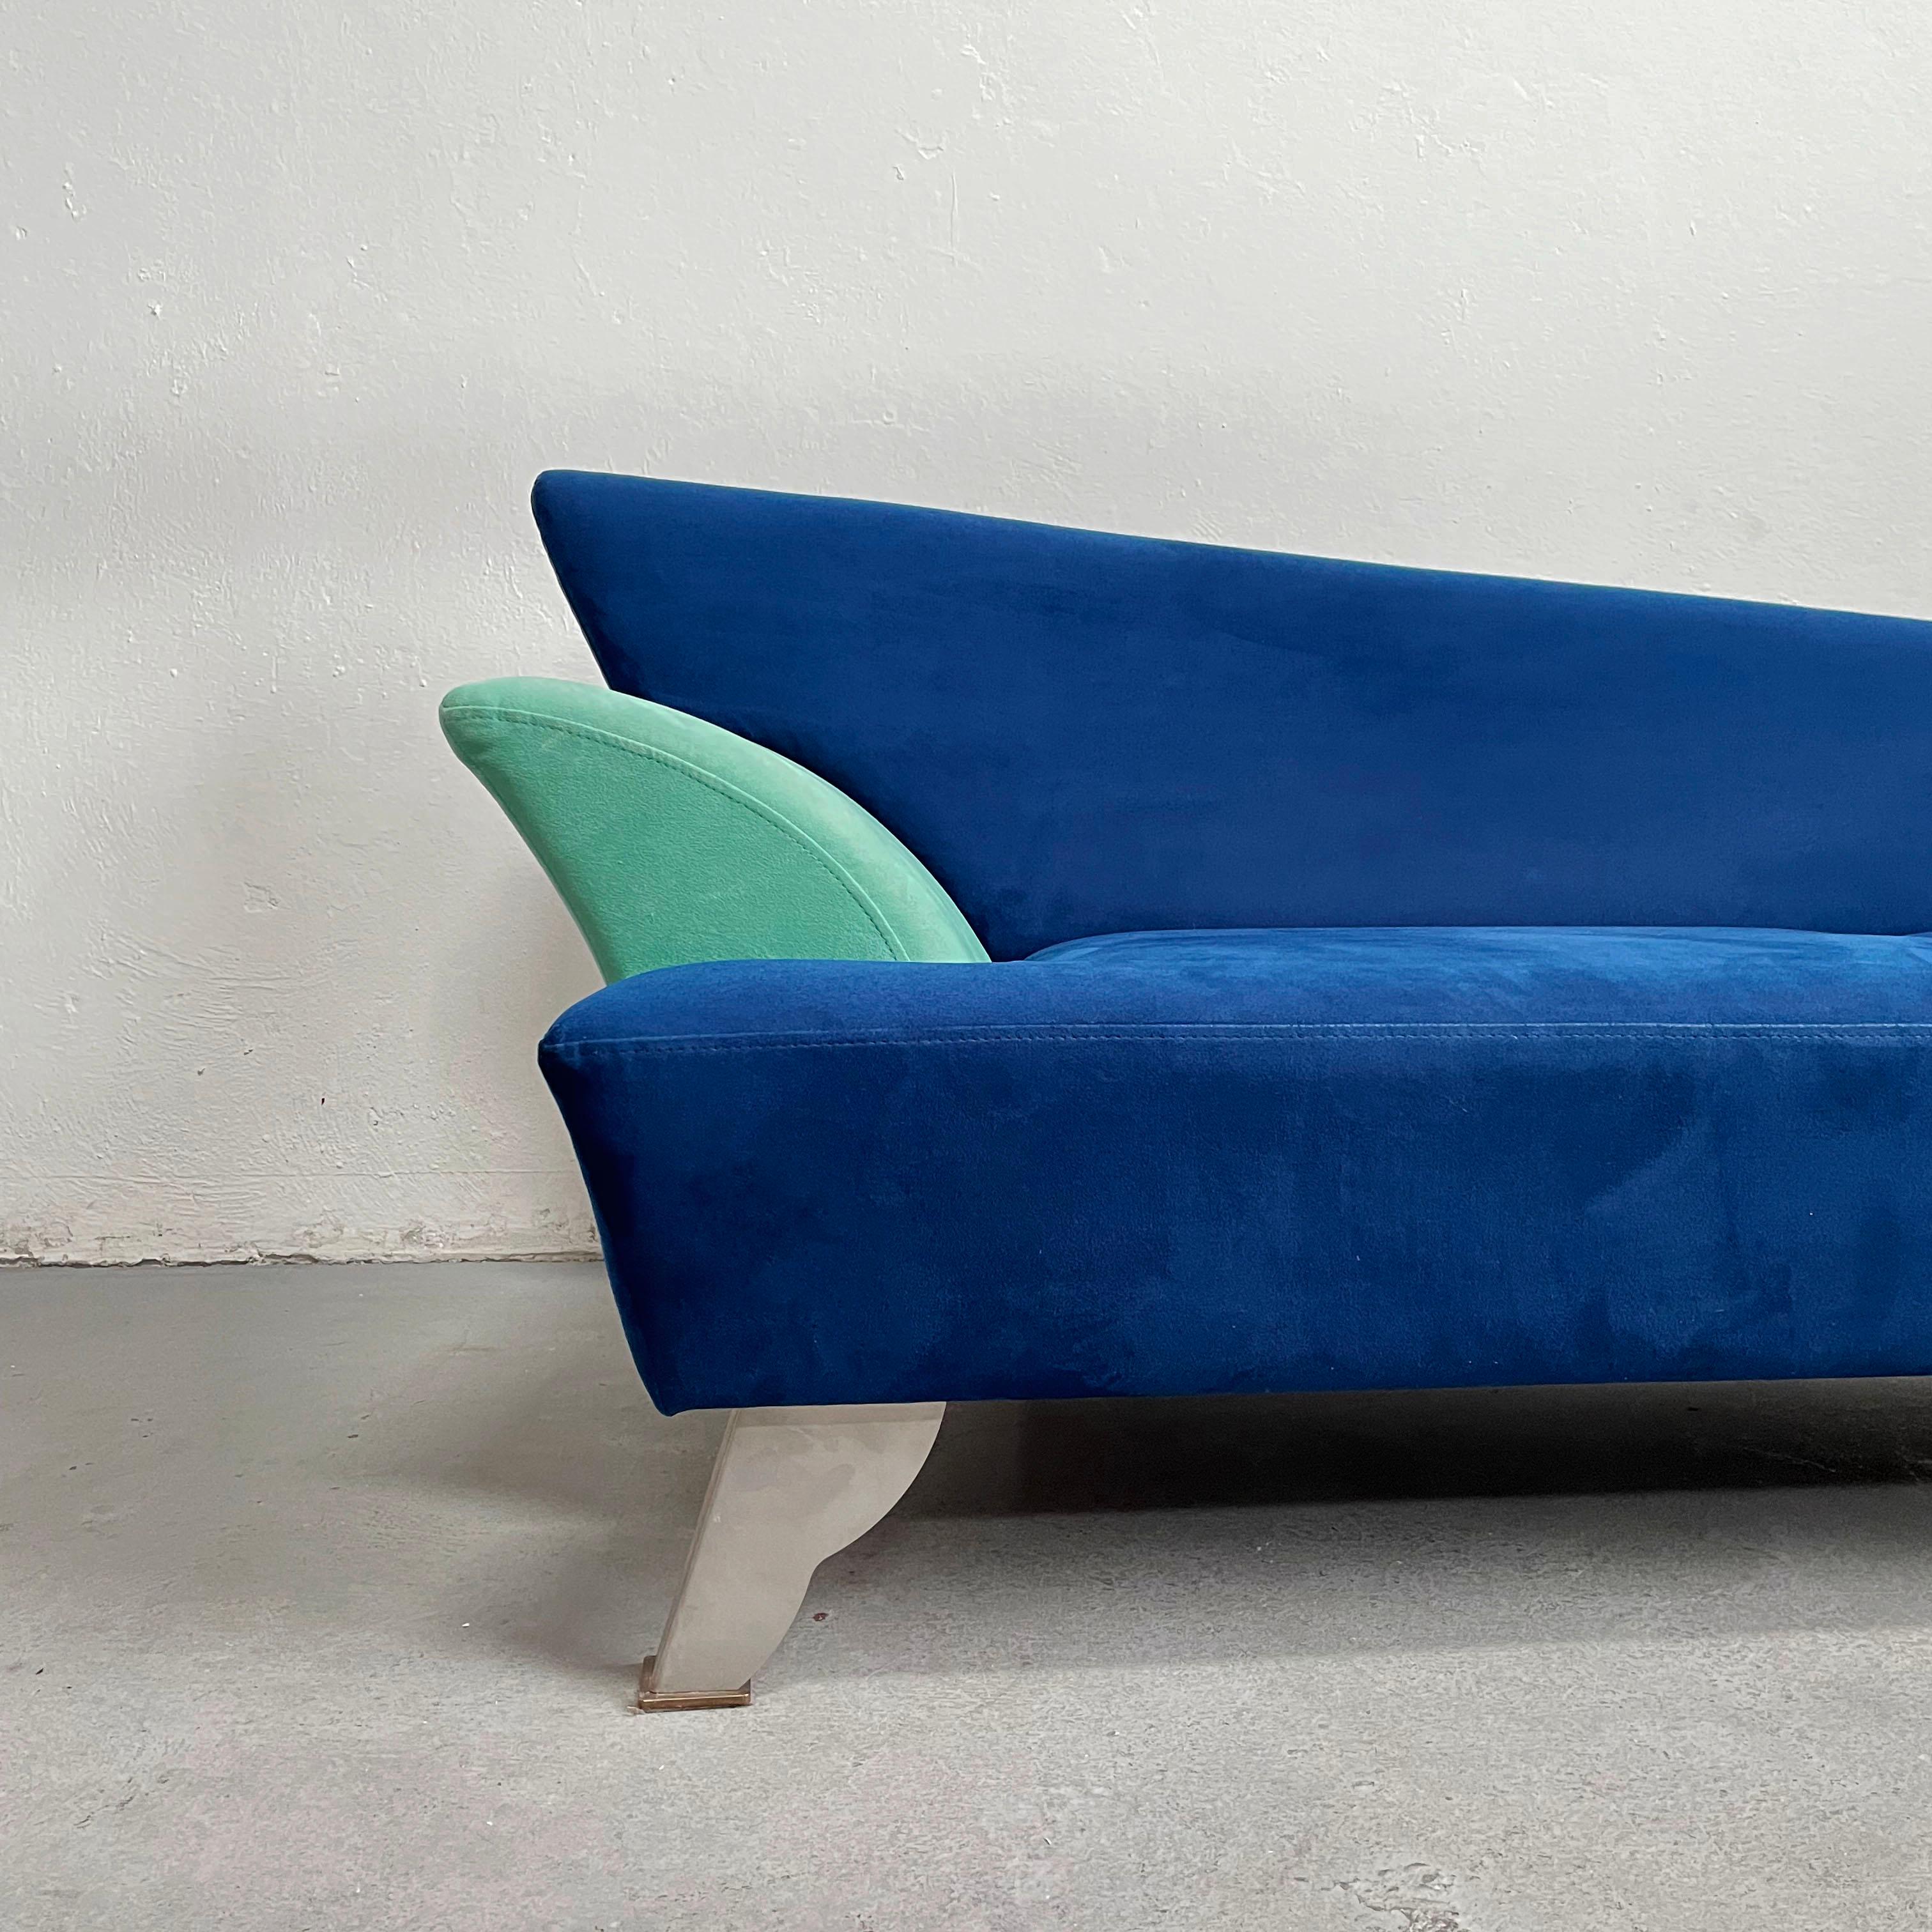 Canapé-lit sculptural postmoderne doté d'une assise asymétrique aux formes élégantes et de pieds en métal de style années 80. Le canapé est recouvert d'un tissu Alcantara bleu.

Fabriqué dans les années 1980, époque du design Memphis. 

Le canapé